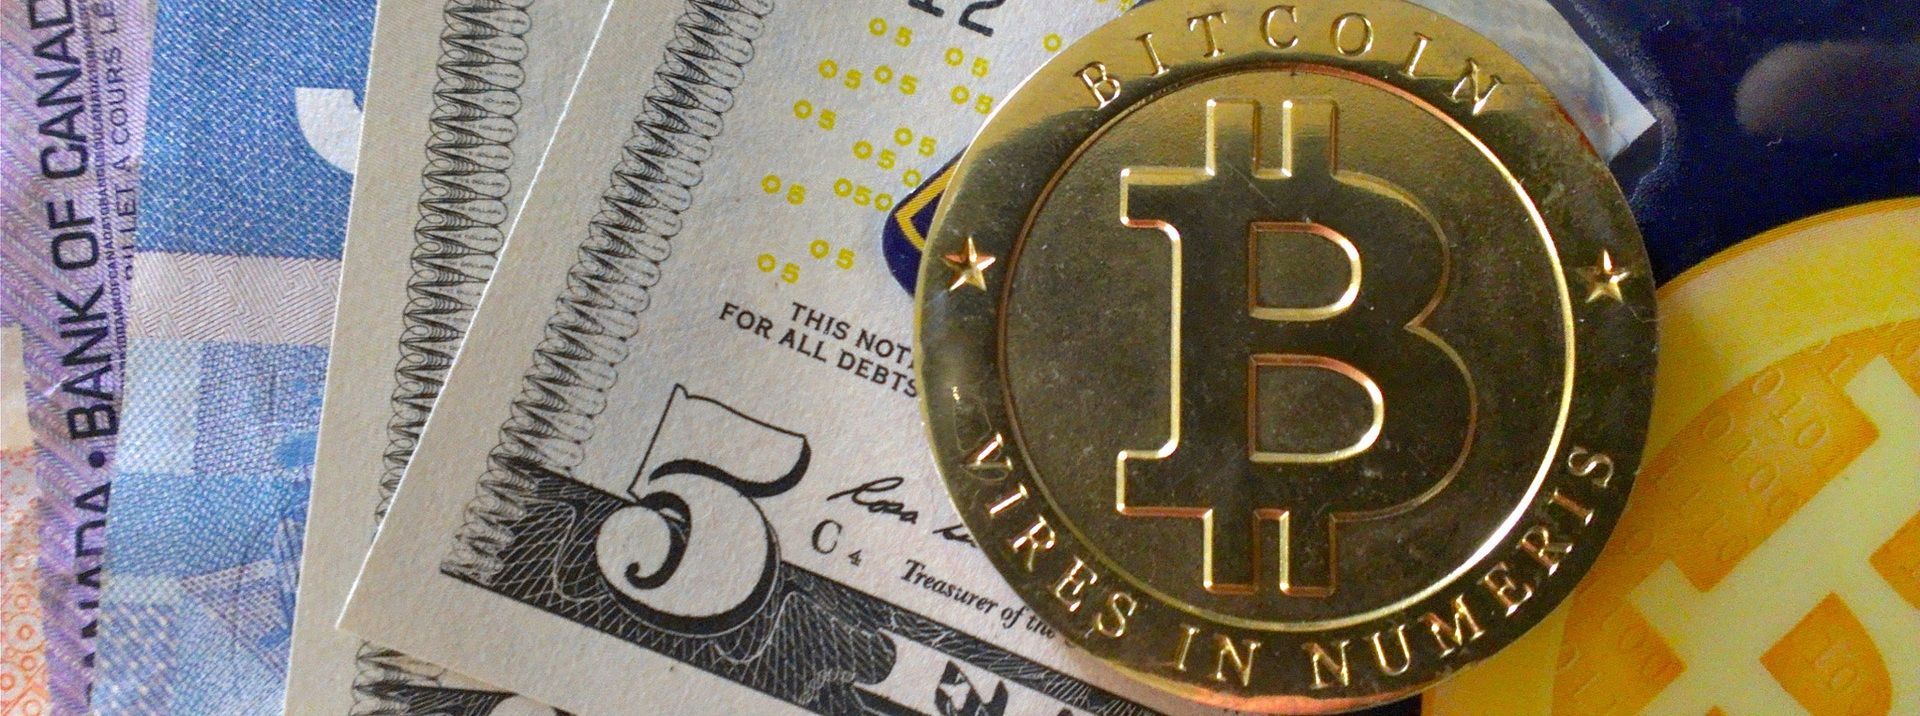 Vừa mới bước chân vào thị trường, Bitcoin Cash đã đánh bại các đối thủ nặng ký khác